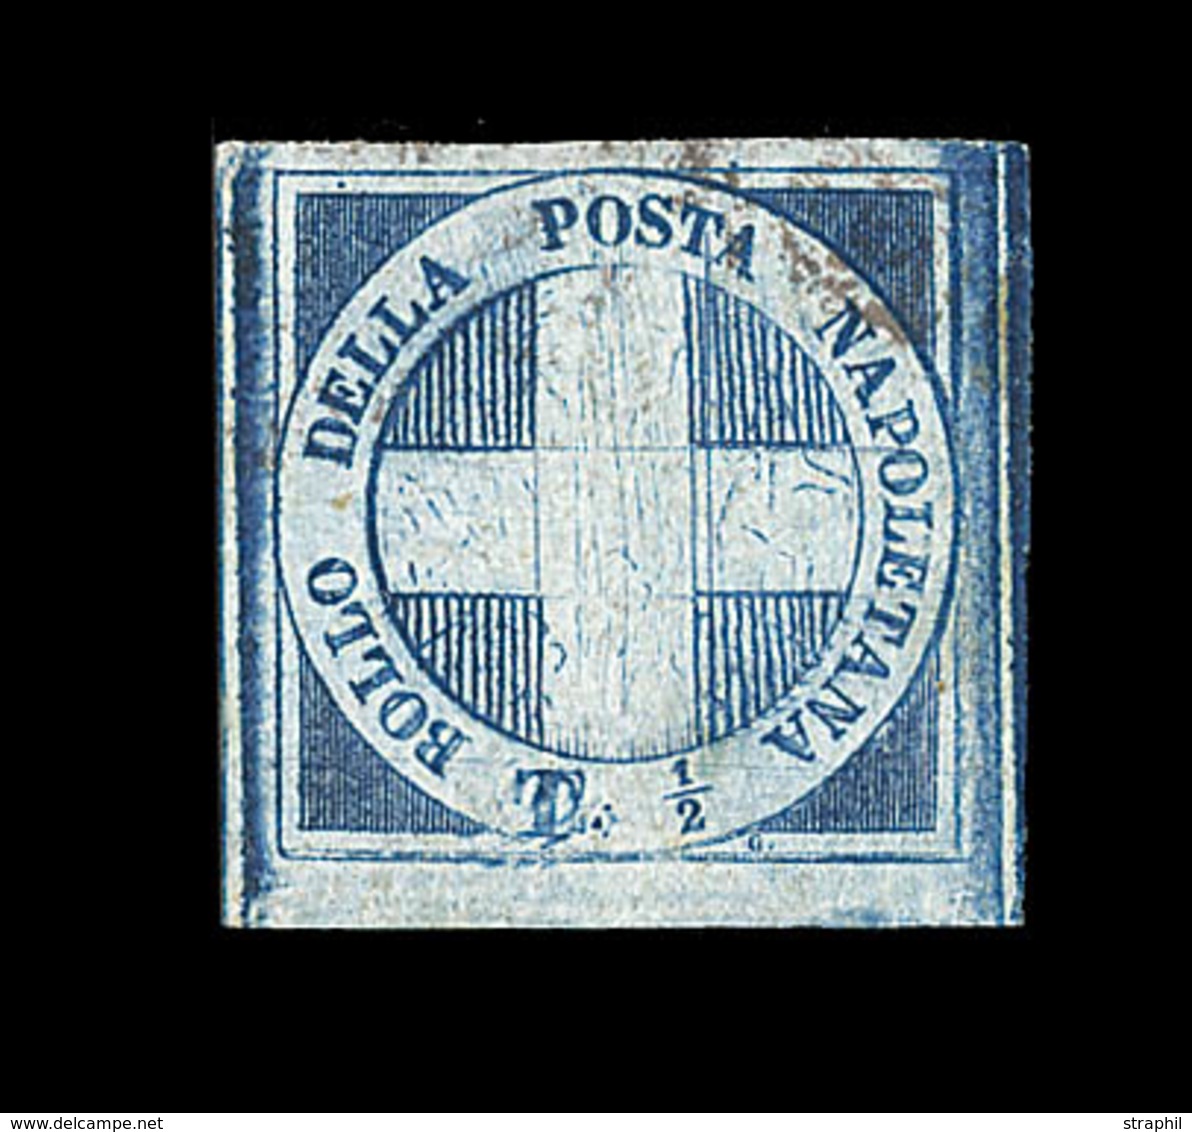 O ETATS ITALIENS - DEUX SICILES - O - N°9 - ½ T Bleu Pâle - Oblitération Légère - Pièce De Luxe - Certif Diena -TB - Etats Pontificaux